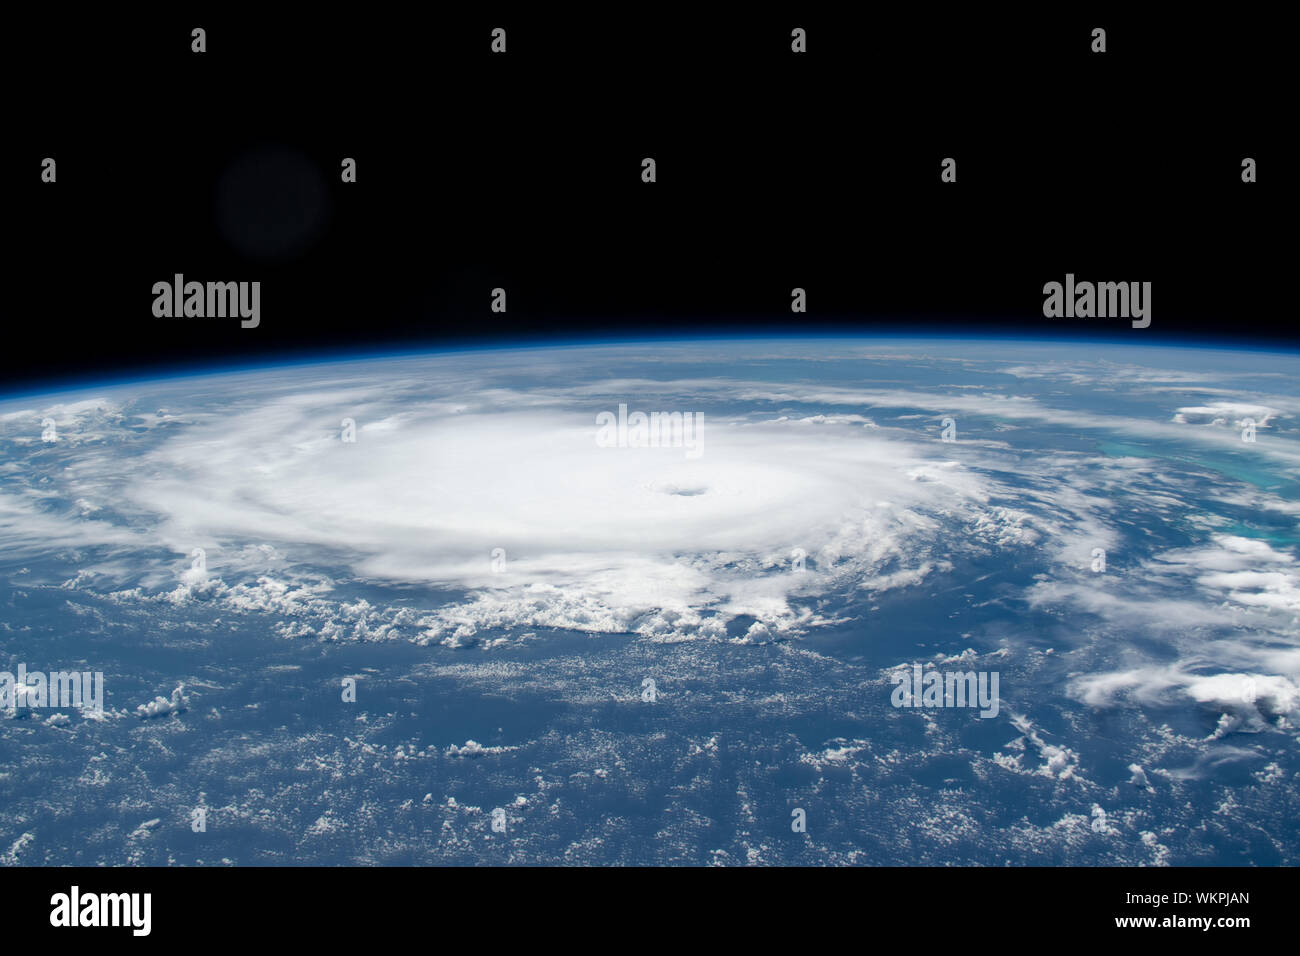 International Space Station. 31 August, 2019. Cyclonic Wolken des Hurrikans Dorian von der Internationalen Raumstation gesehen wie es bewegt sich über das Nassau auf den Bahamas August 31, 2019 in den Atlantischen Ozean. Die aktuelle Prognose verlangt Dorian vor dem Landfall in Südflorida späten Montag über offenes Wasser zu der Kategorie 4 mit Windgeschwindigkeiten von 140 km/h zu stärken. Bild: NASA/Planetpix/Alamy leben Nachrichten Stockfoto